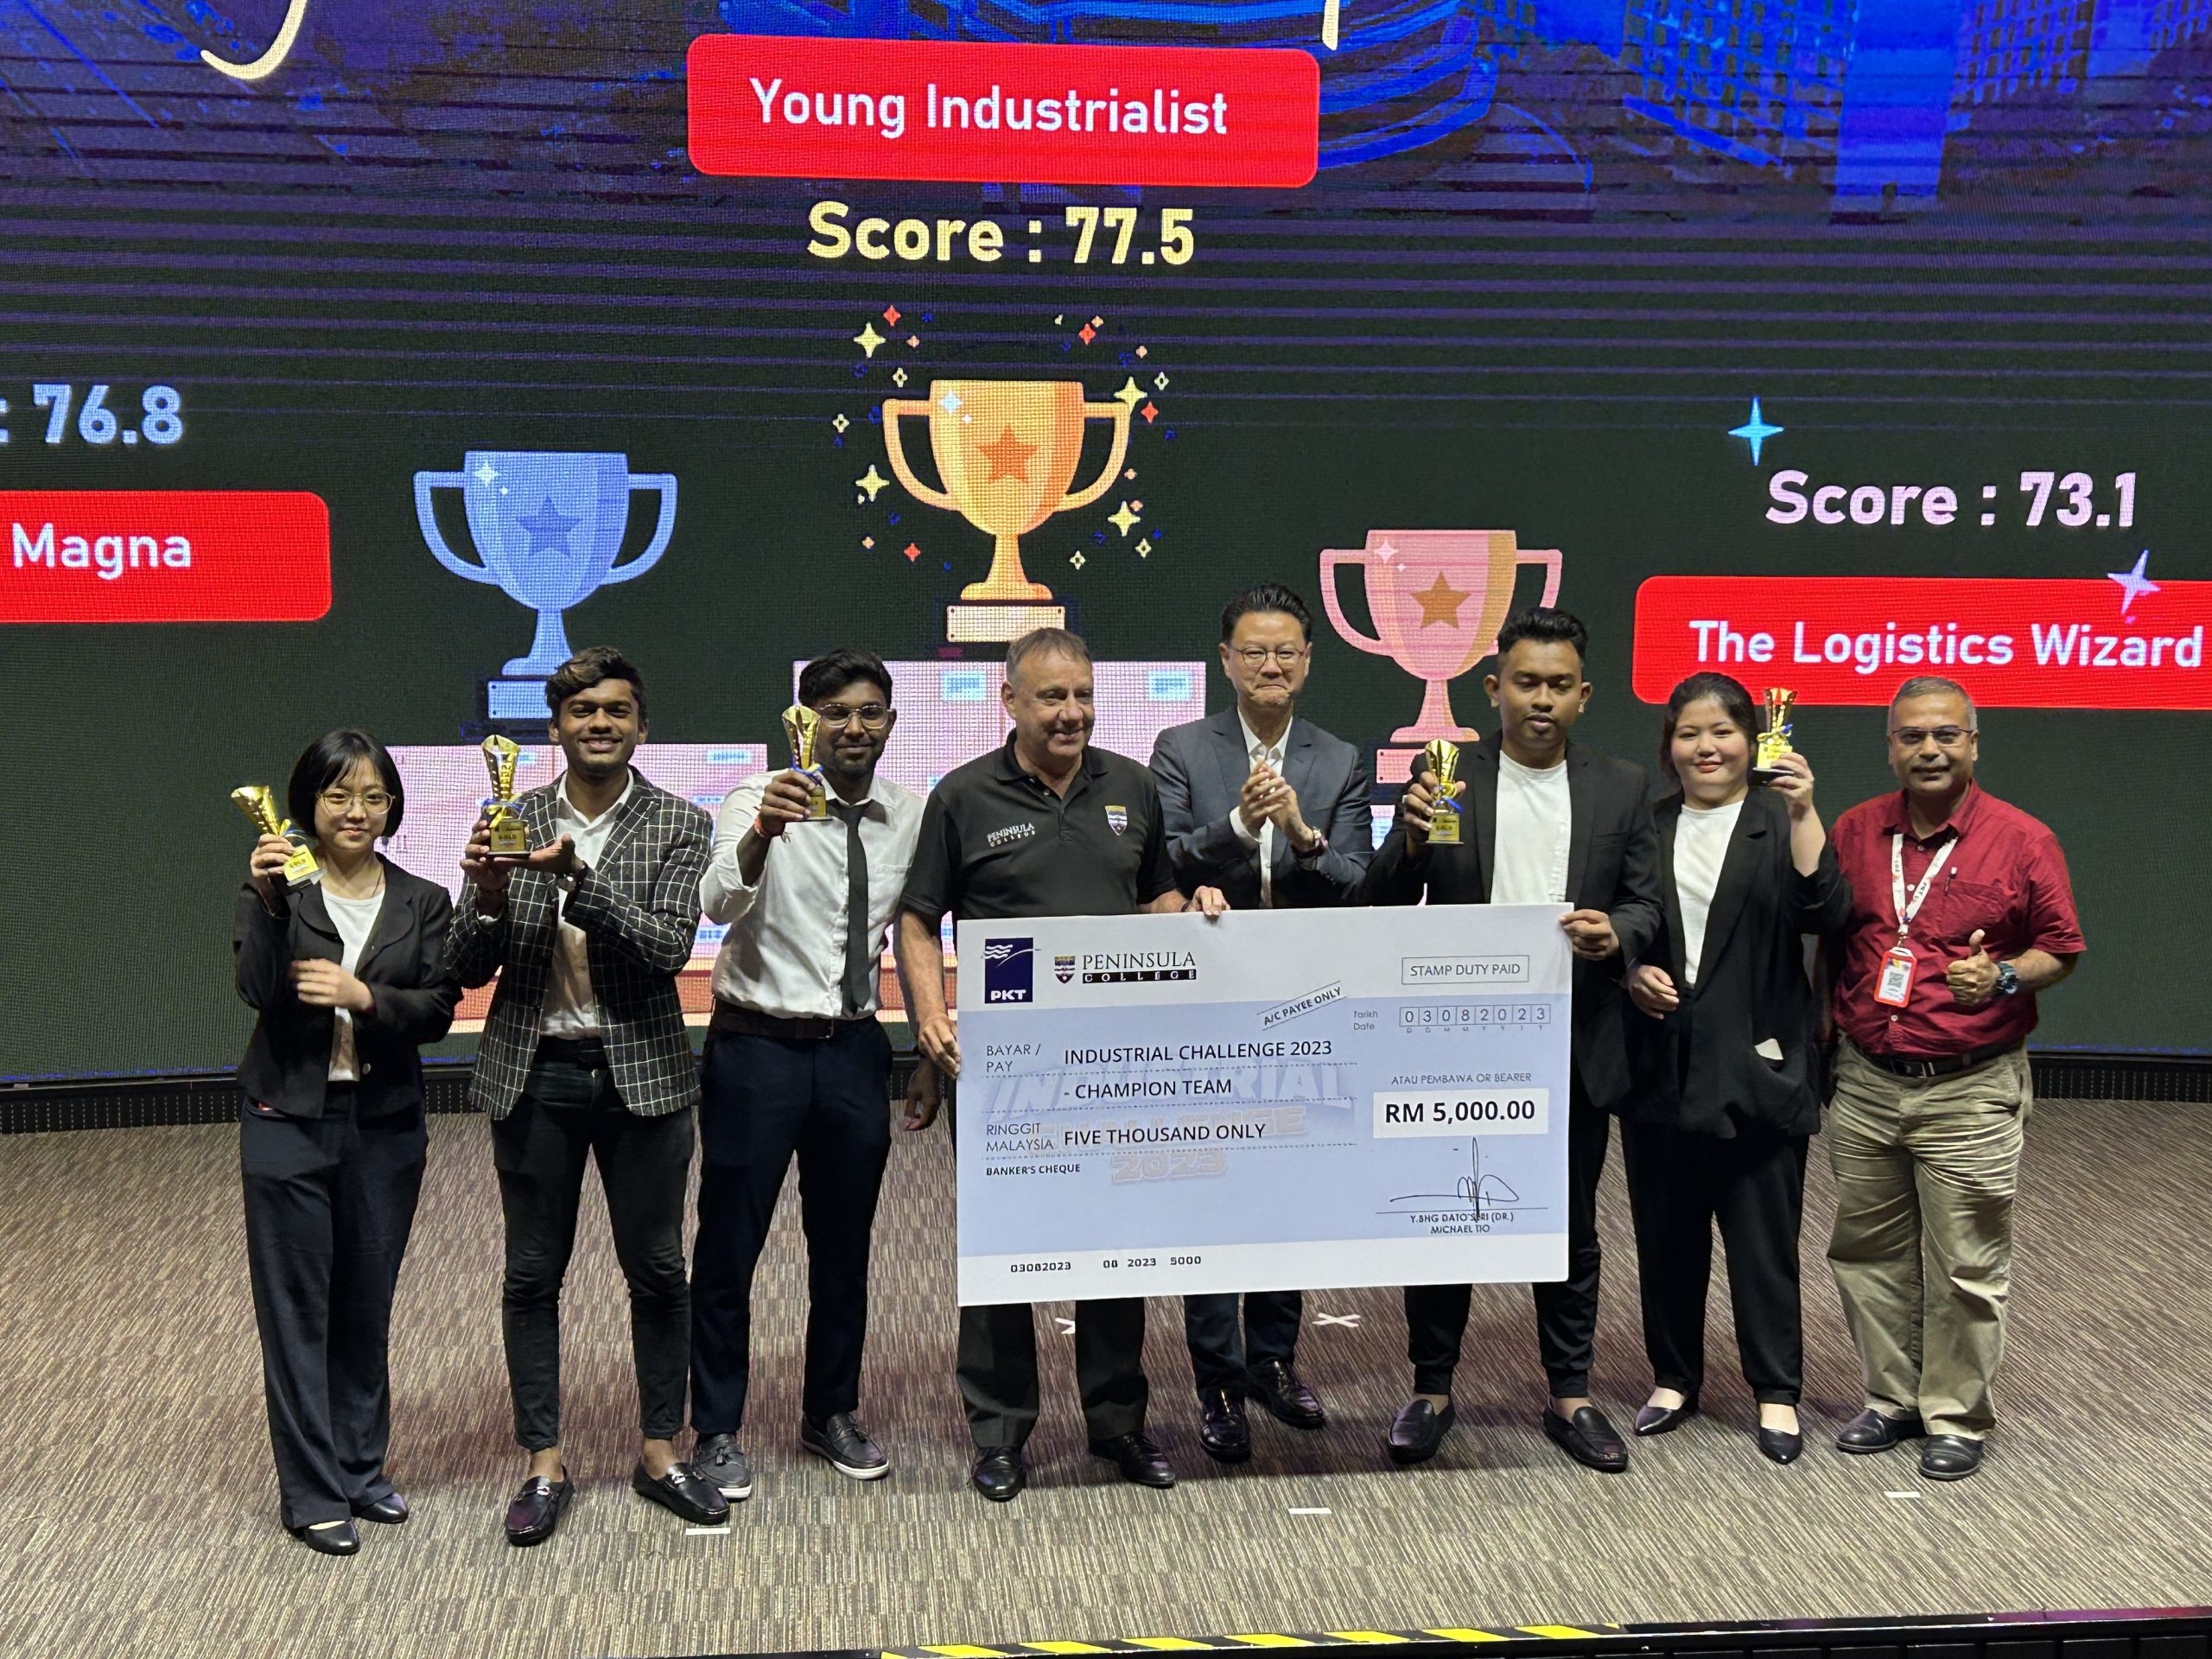 培能學院2023年工業挑戰競賽獲得第一名的Young Industrialists隊員，黃睬荋（左一起）、Kavithran A/L Magesan、Arisangar A/L Humapathi、導師Sivakumar Krishnan（右一起）、李雨楓、Pharadda Vishnu，領獎後與Ian Pashby（左四）及拿督斯里趙文耀（左五）合影。